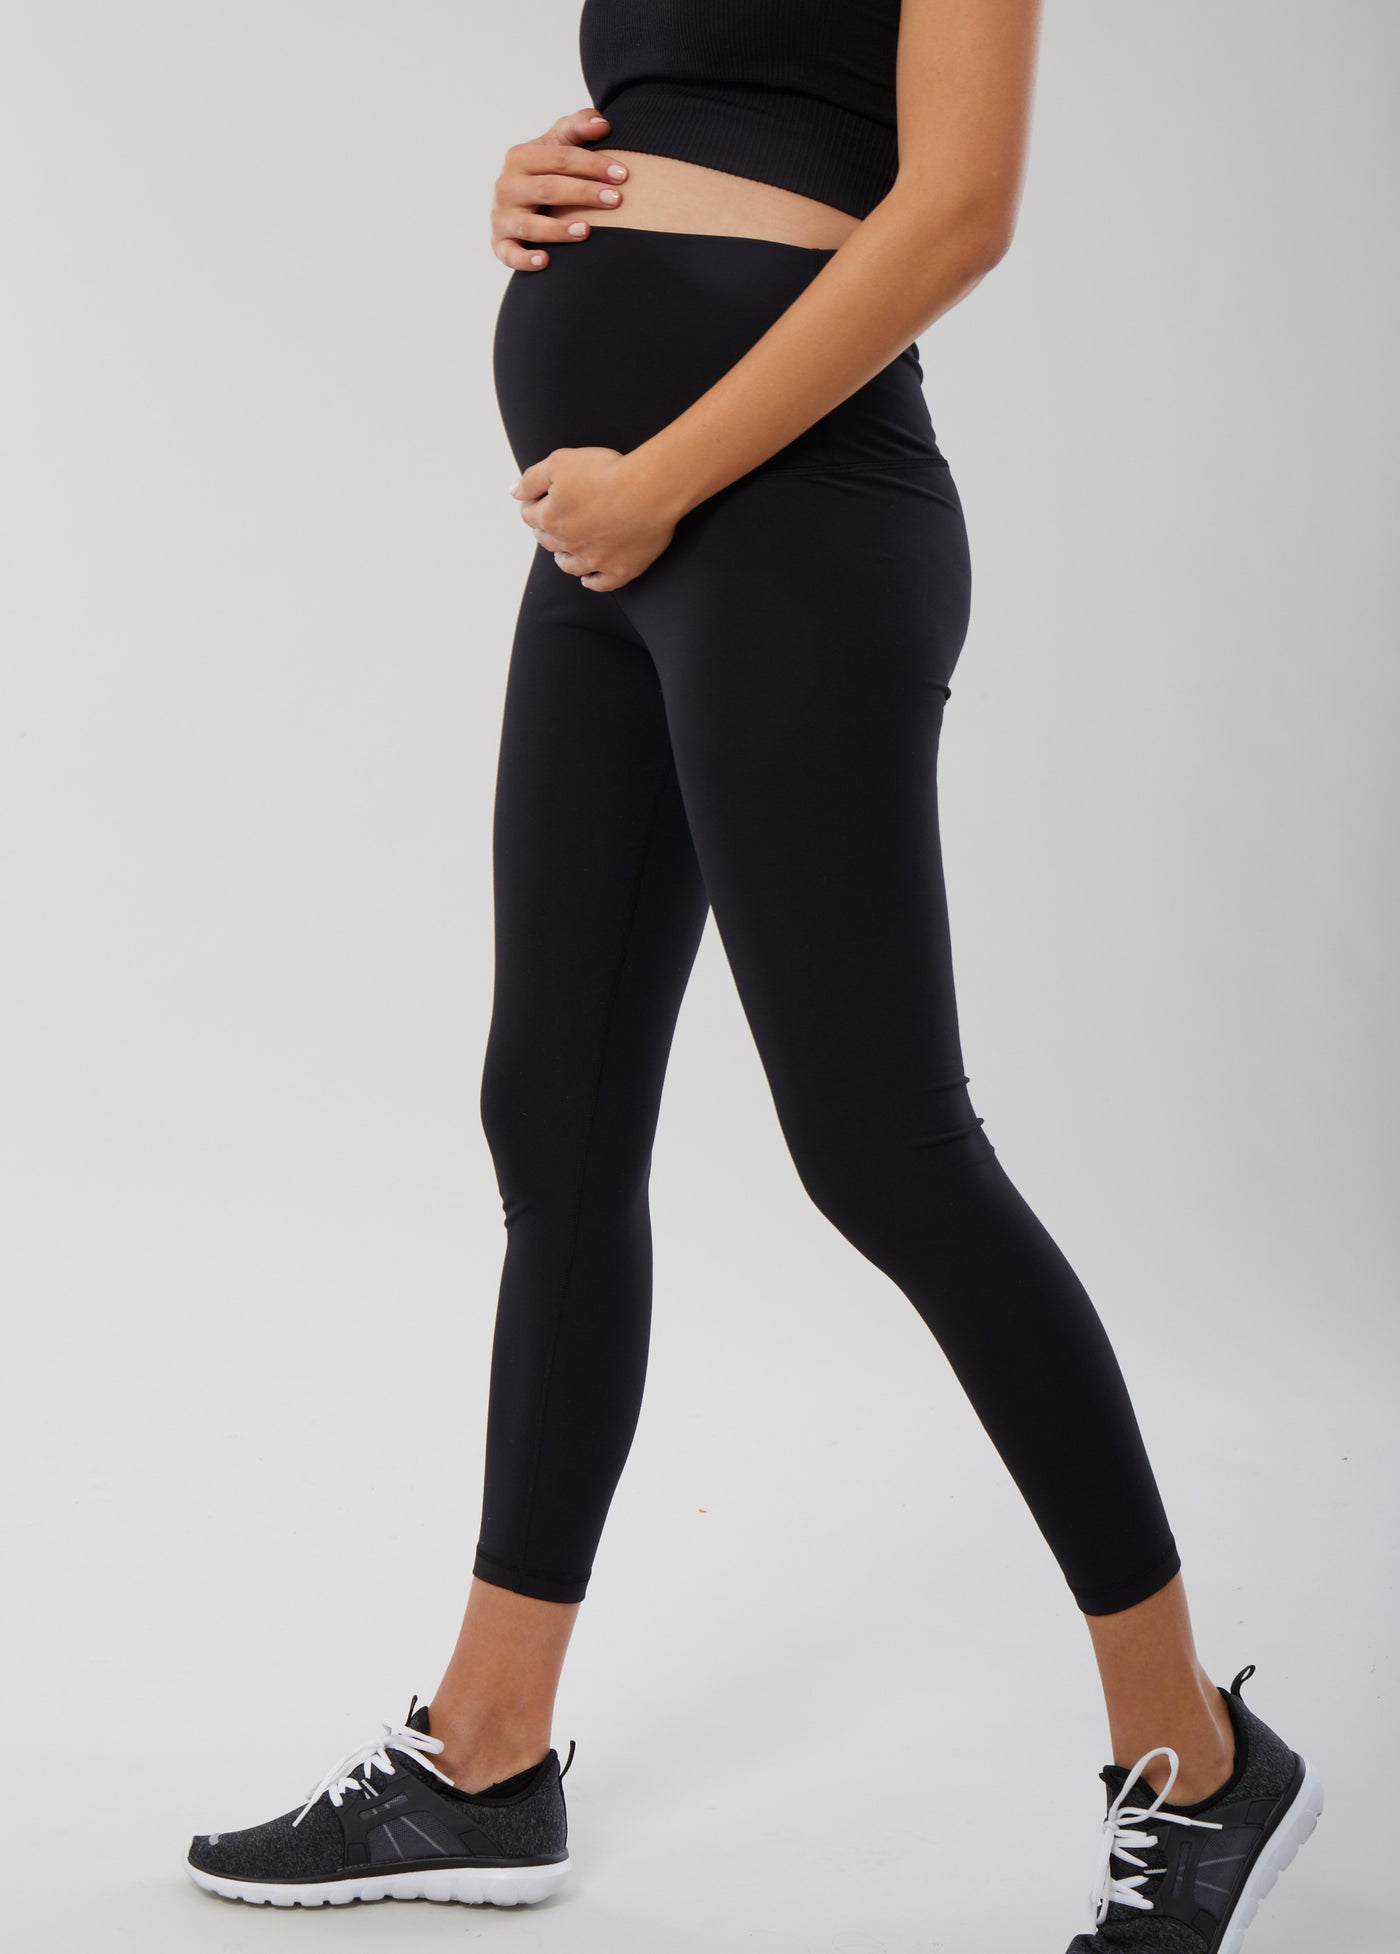 Fourth Trimester Style: 5 Tips for Dressing your Postpartum Body – Preggo  Leggings